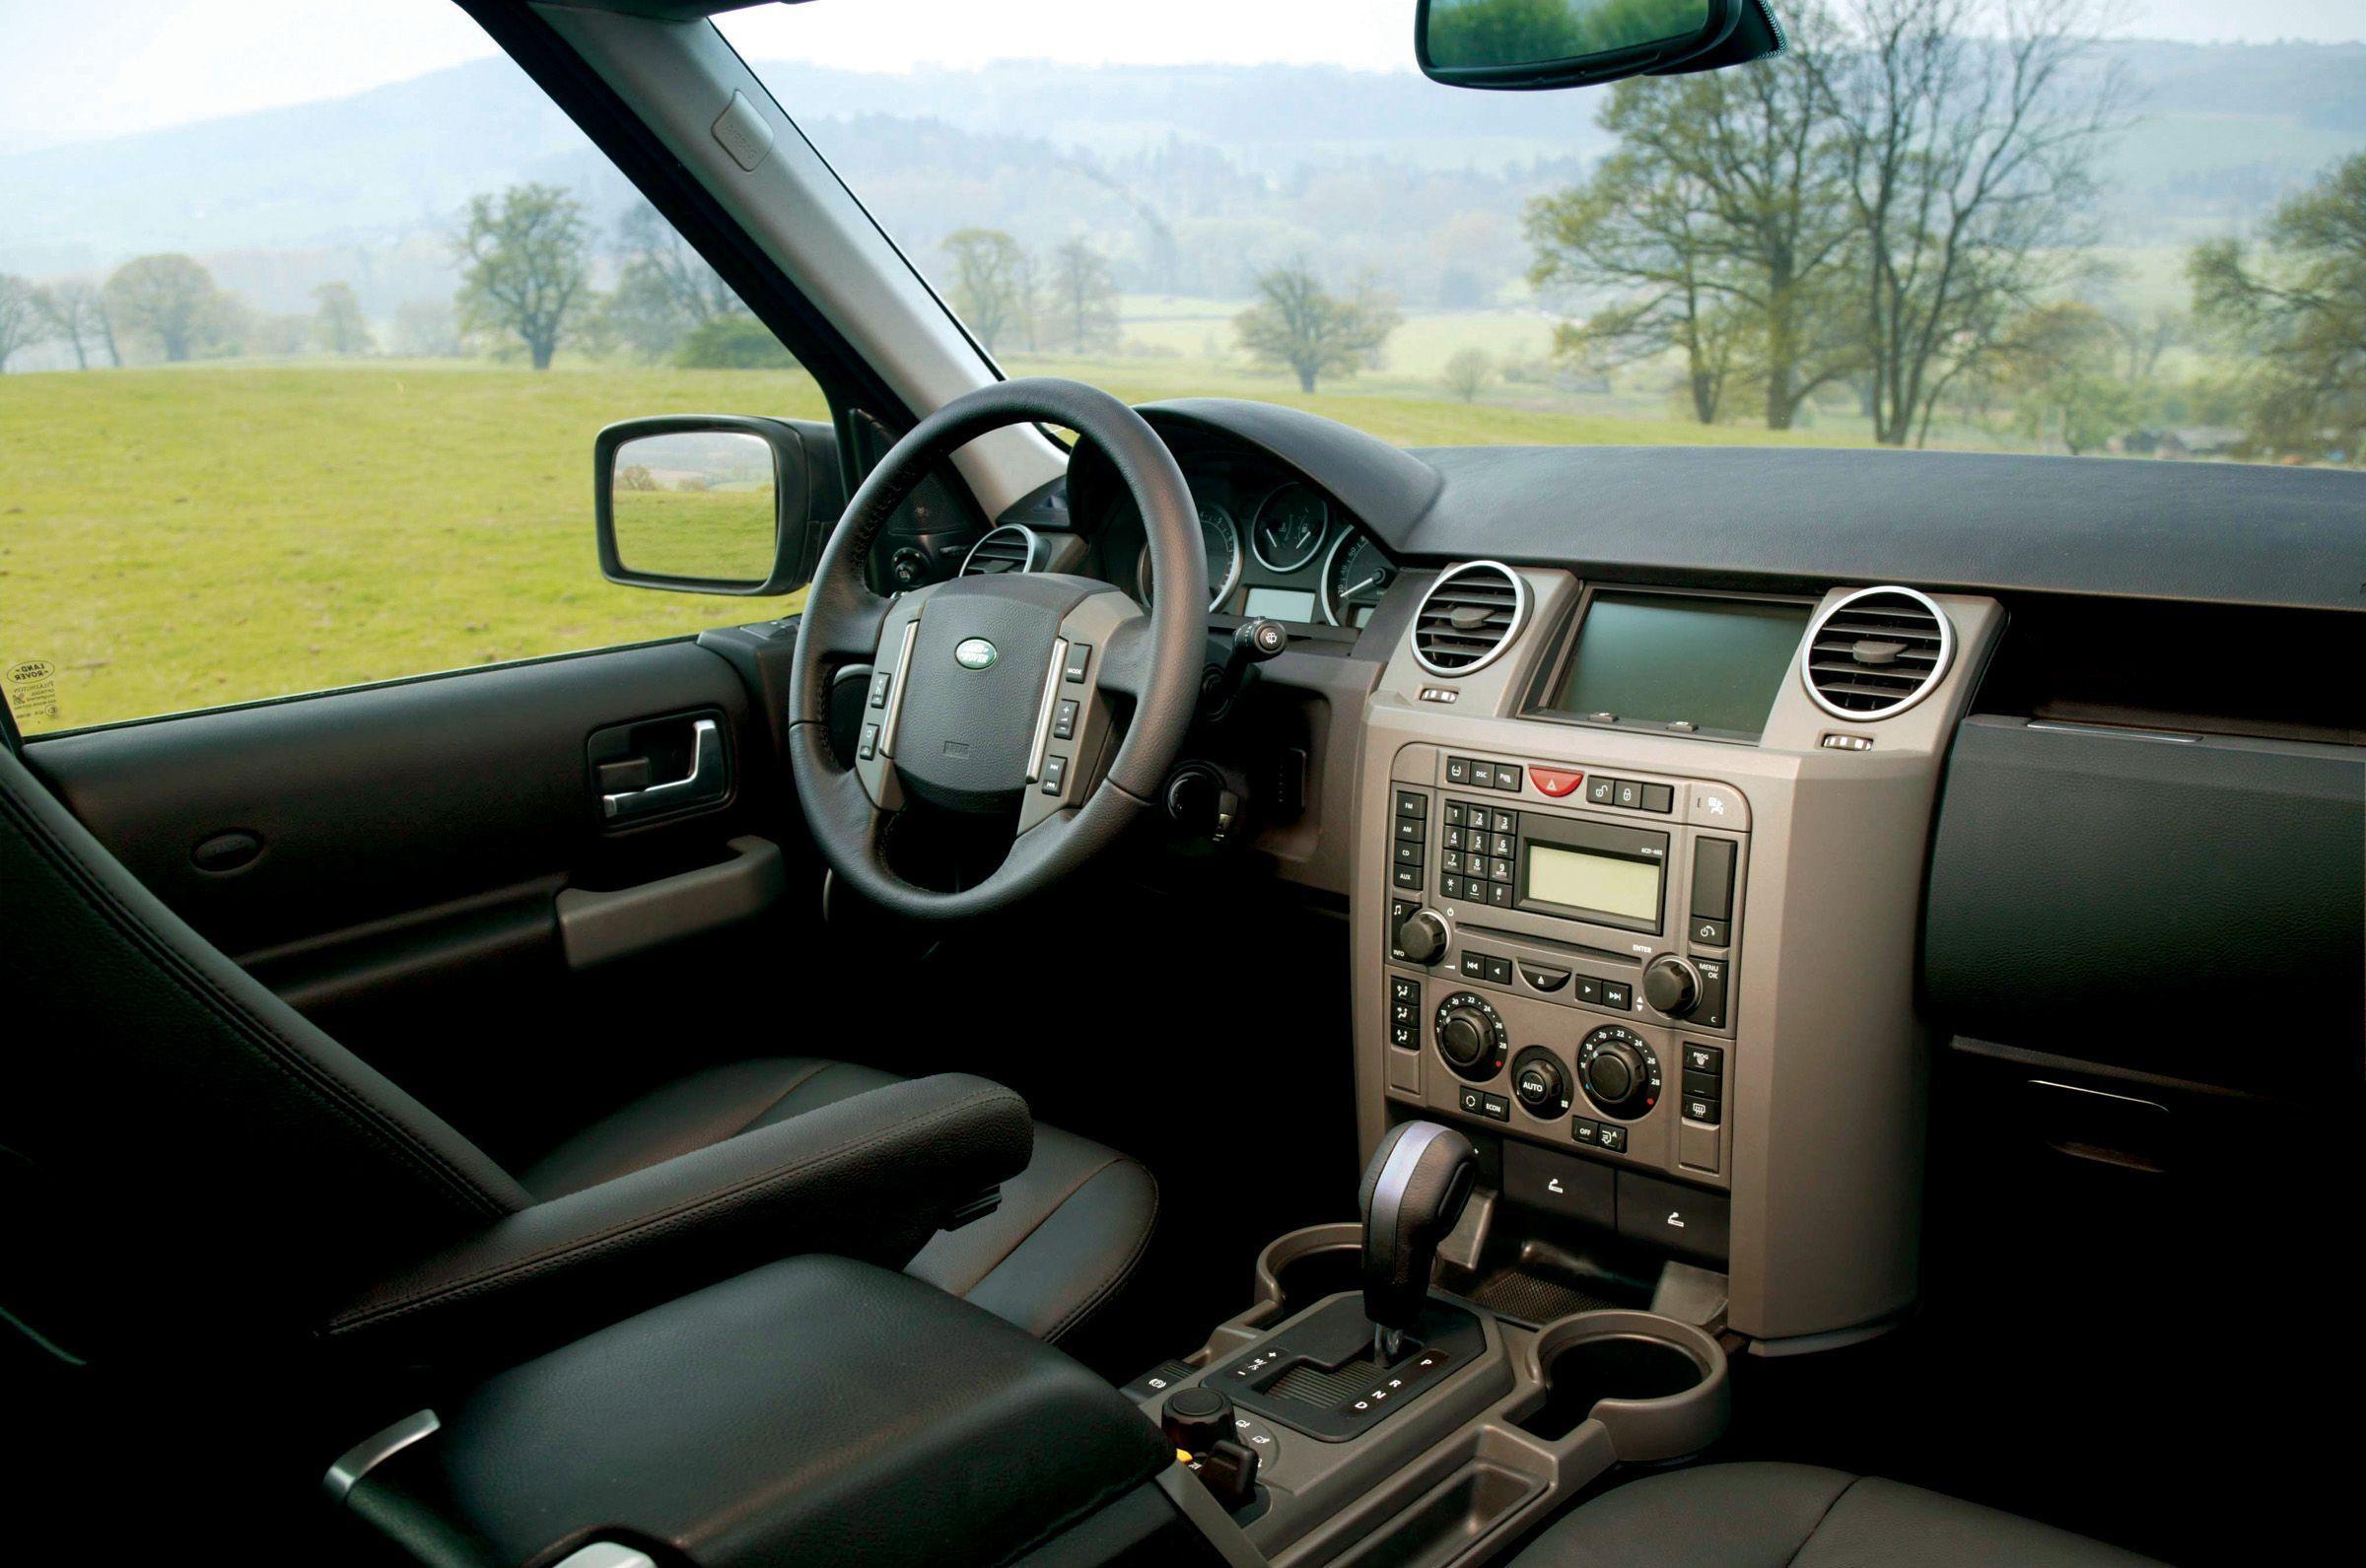 Дискавери 3 салон. Land Rover Discovery 3 2009. Land Rover Discovery 4 Interior. Land Rover Discovery III 2009 салон. Ленд Ровер Дискавери 3 салон.